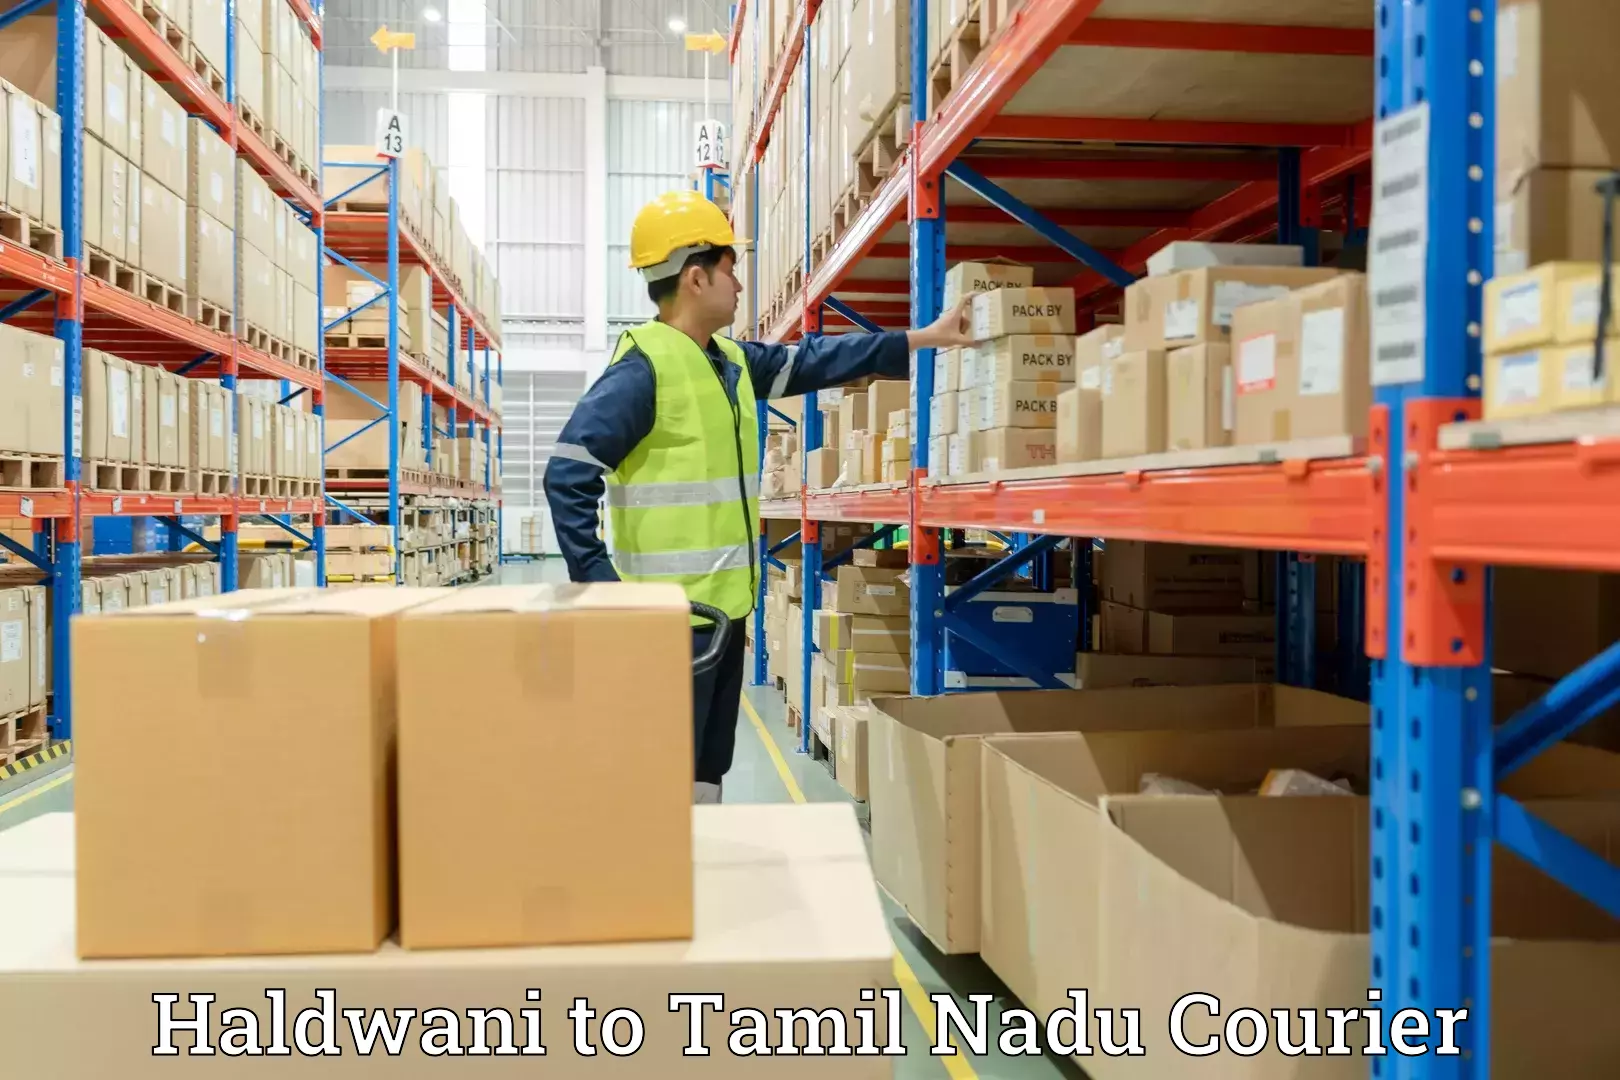 Quality moving and storage Haldwani to Tamil Nadu